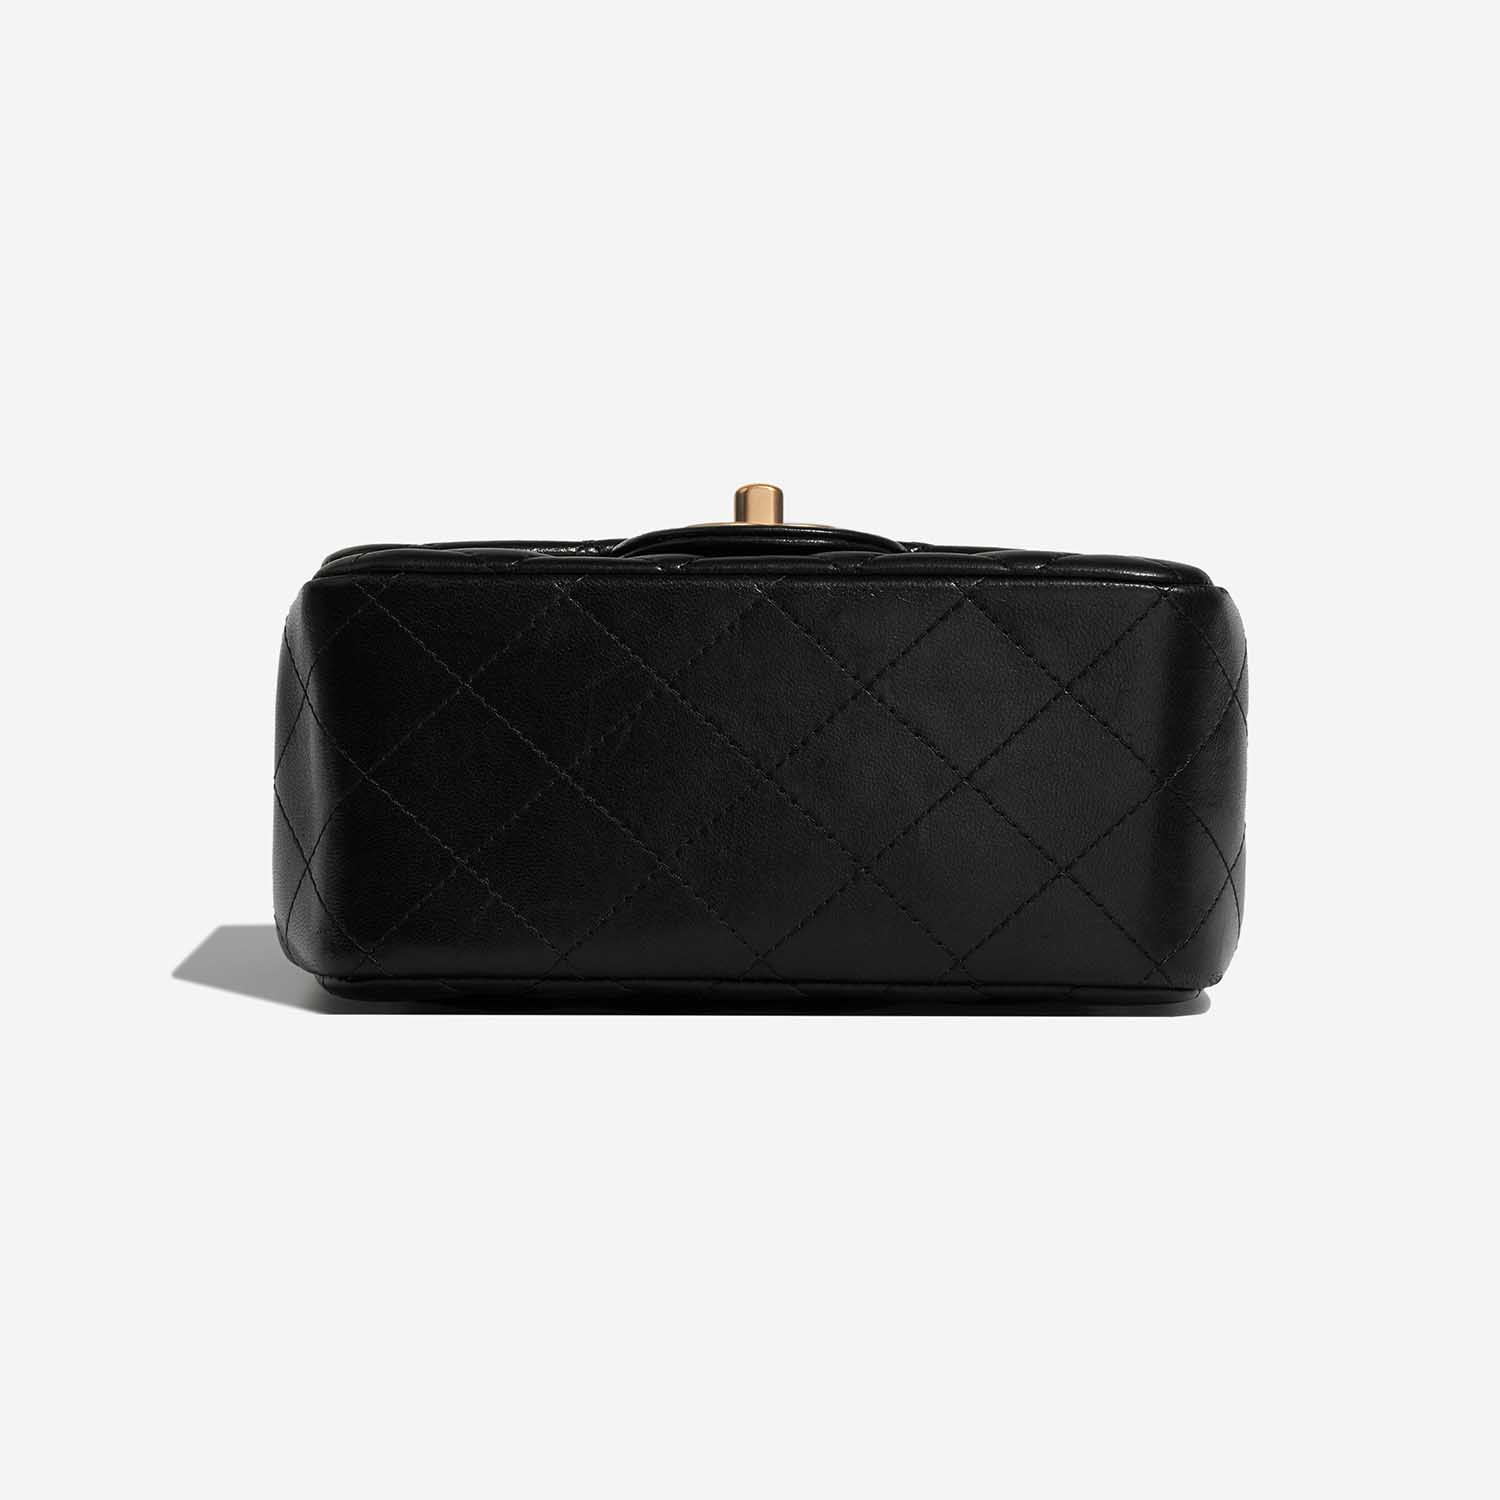 Chanel Timeless MiniRectangular Black Bottom | Verkaufen Sie Ihre Designer-Tasche auf Saclab.com